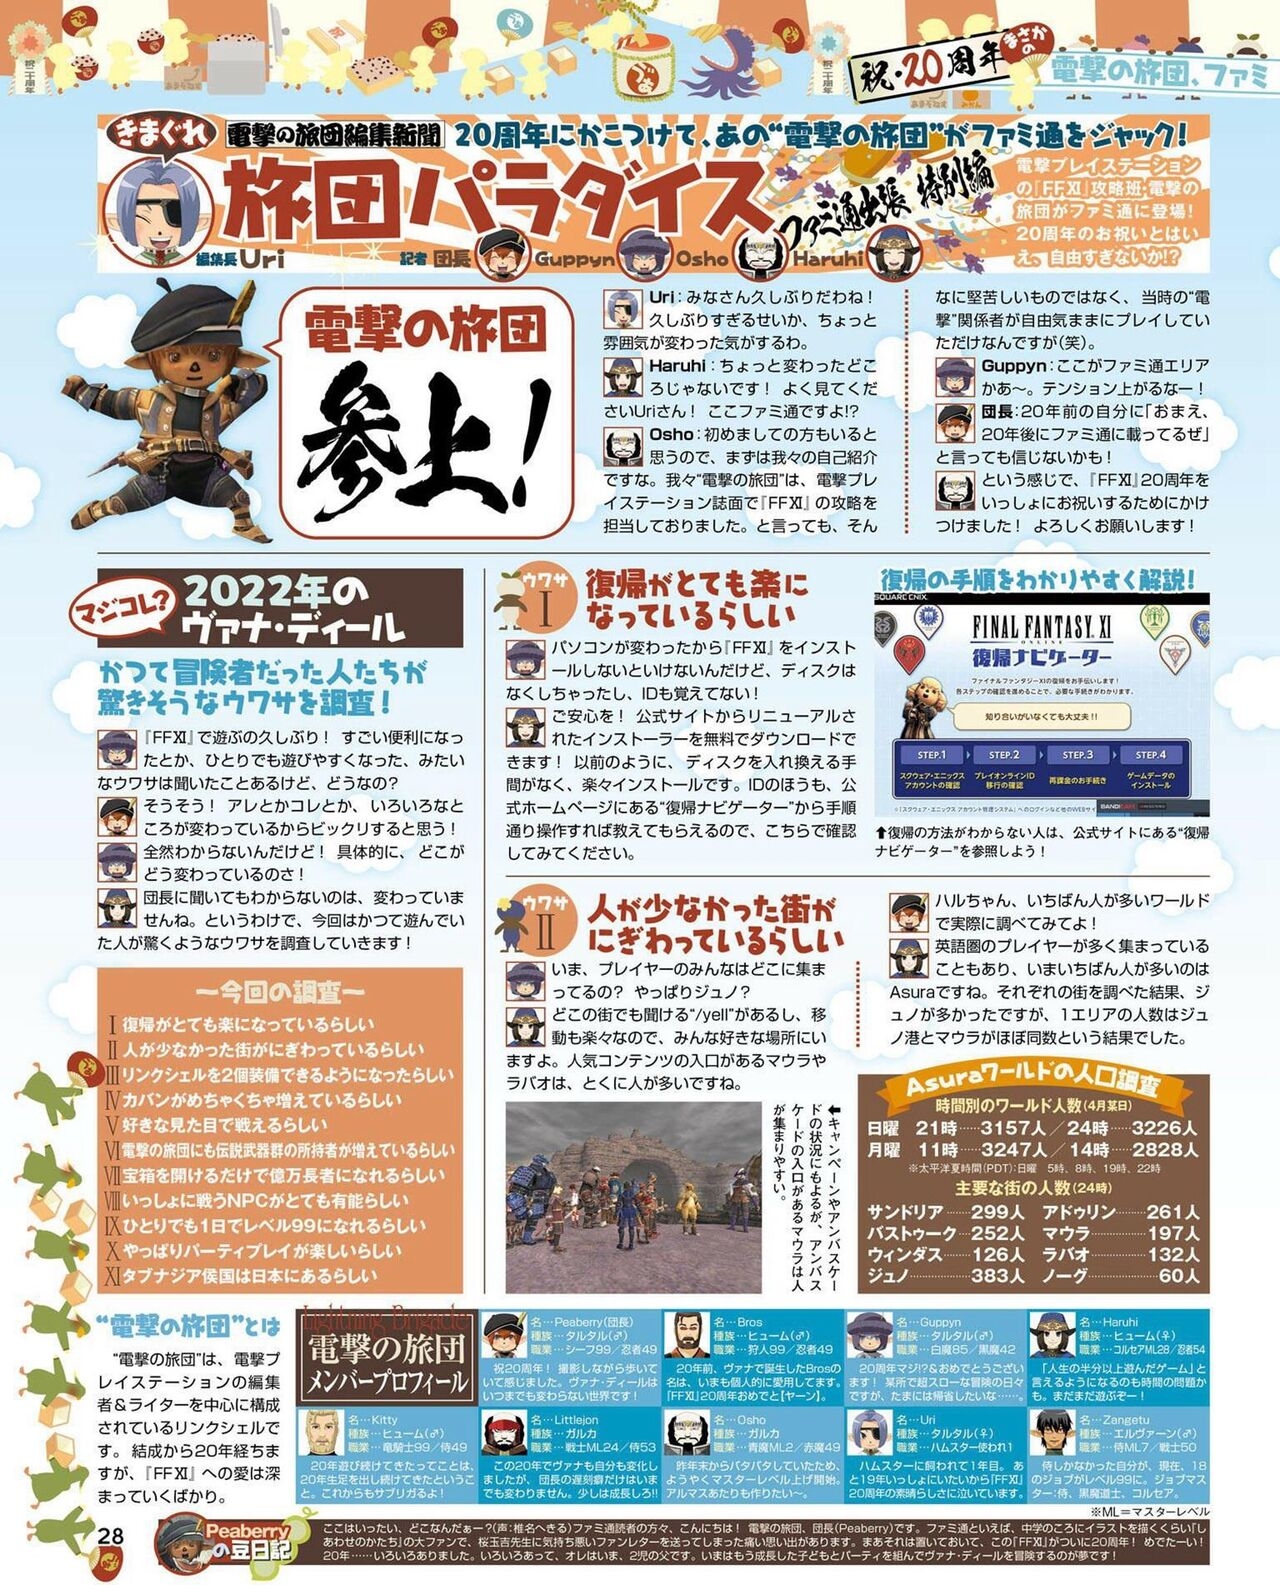 Weekly Famitsu 2022 6 2 27